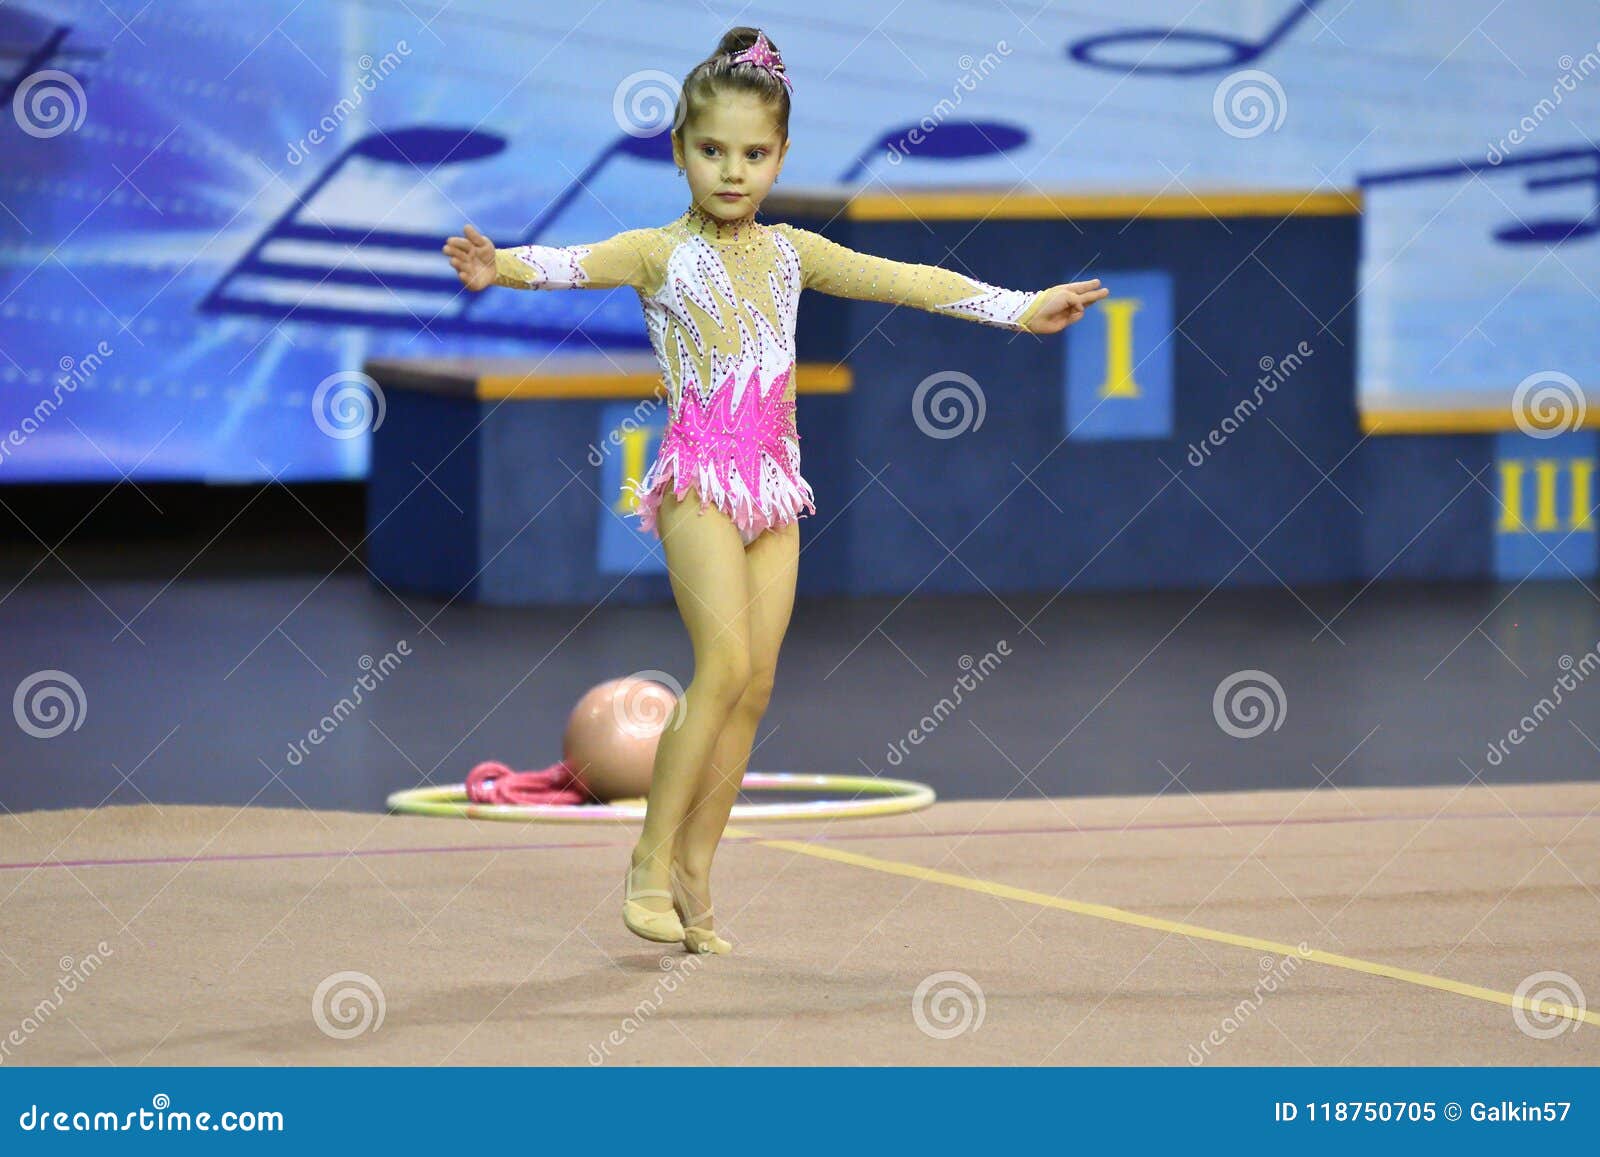 Russian teen girl gymnast